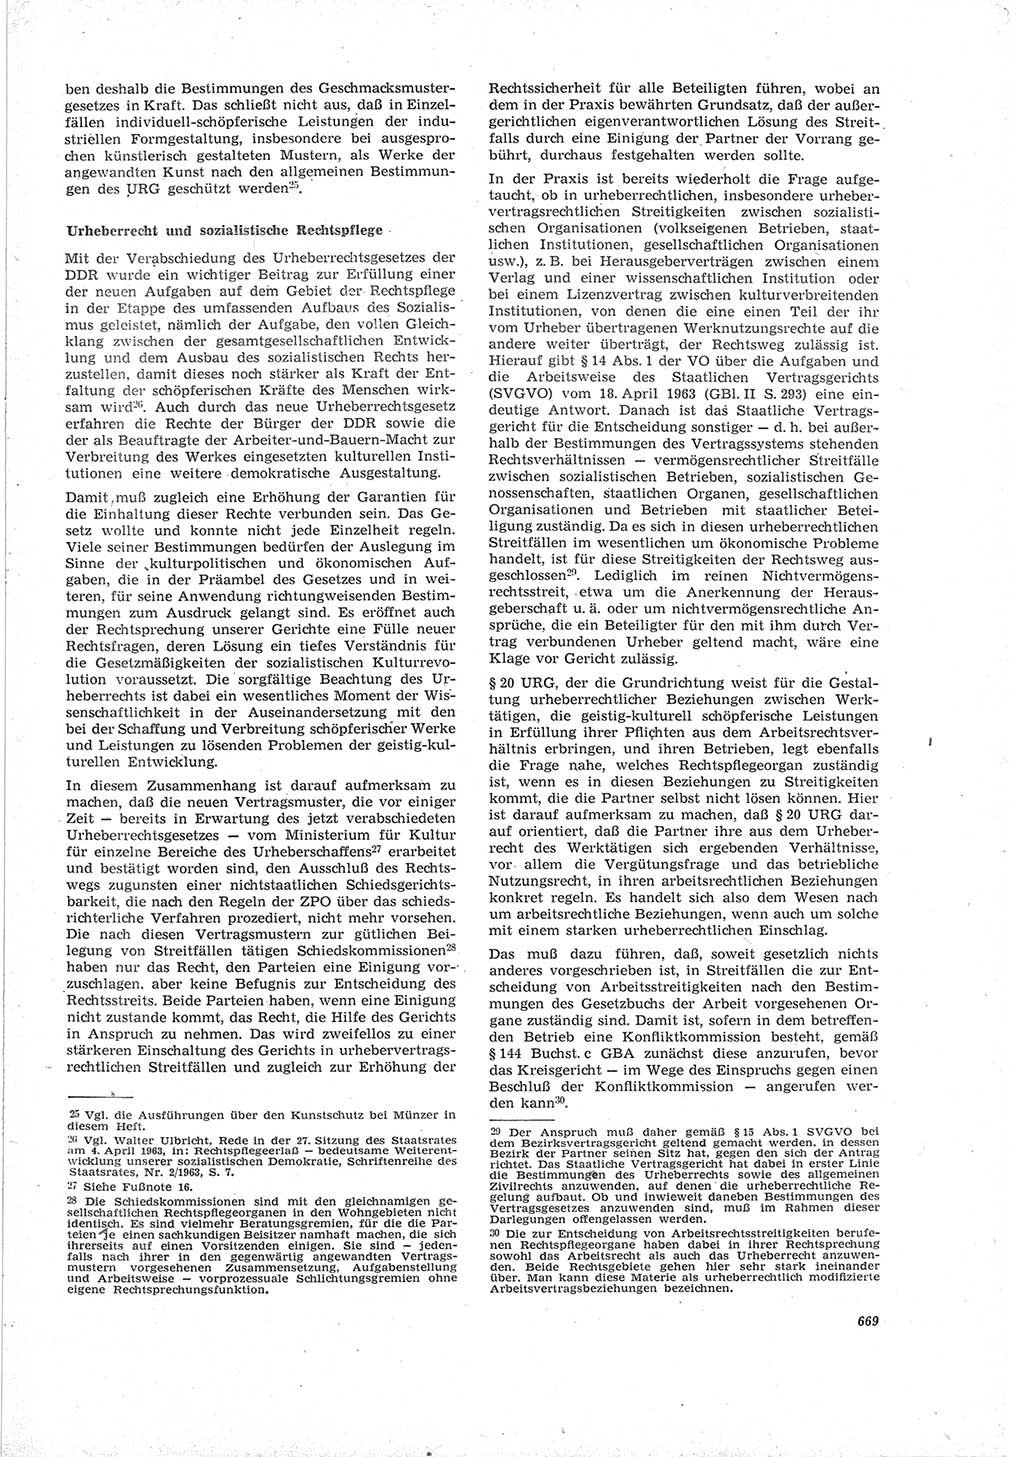 Neue Justiz (NJ), Zeitschrift für Recht und Rechtswissenschaft [Deutsche Demokratische Republik (DDR)], 19. Jahrgang 1965, Seite 669 (NJ DDR 1965, S. 669)